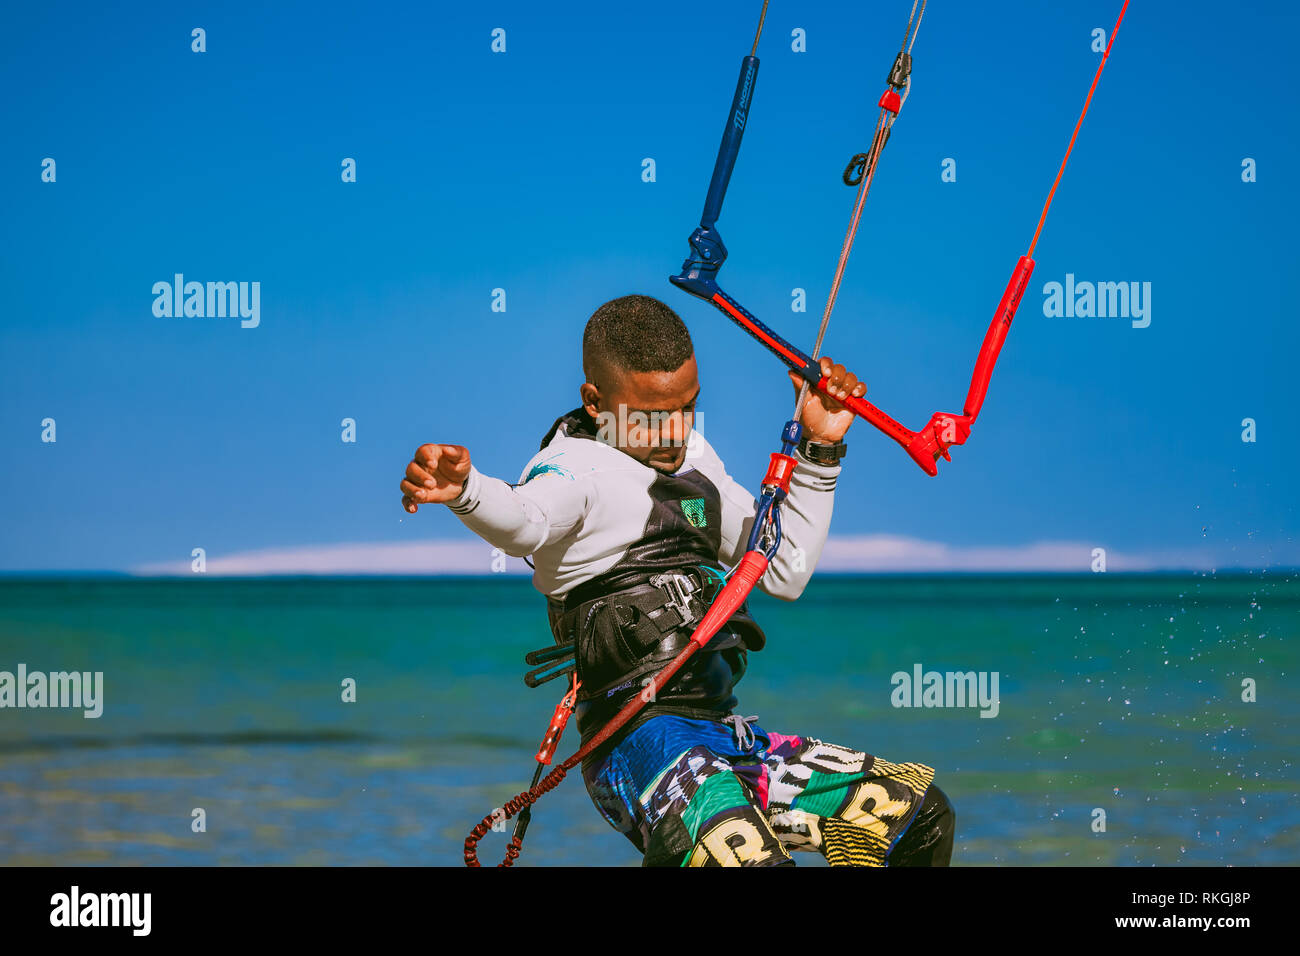 Ägypten, Hurghada, 30. November 2017: Close-up Surfer halten der Kite Seil stehend auf dem Surfbrett. Rotes Meer Hintergrund. Die Aktivitäten im Freien. Extrem Stockfoto